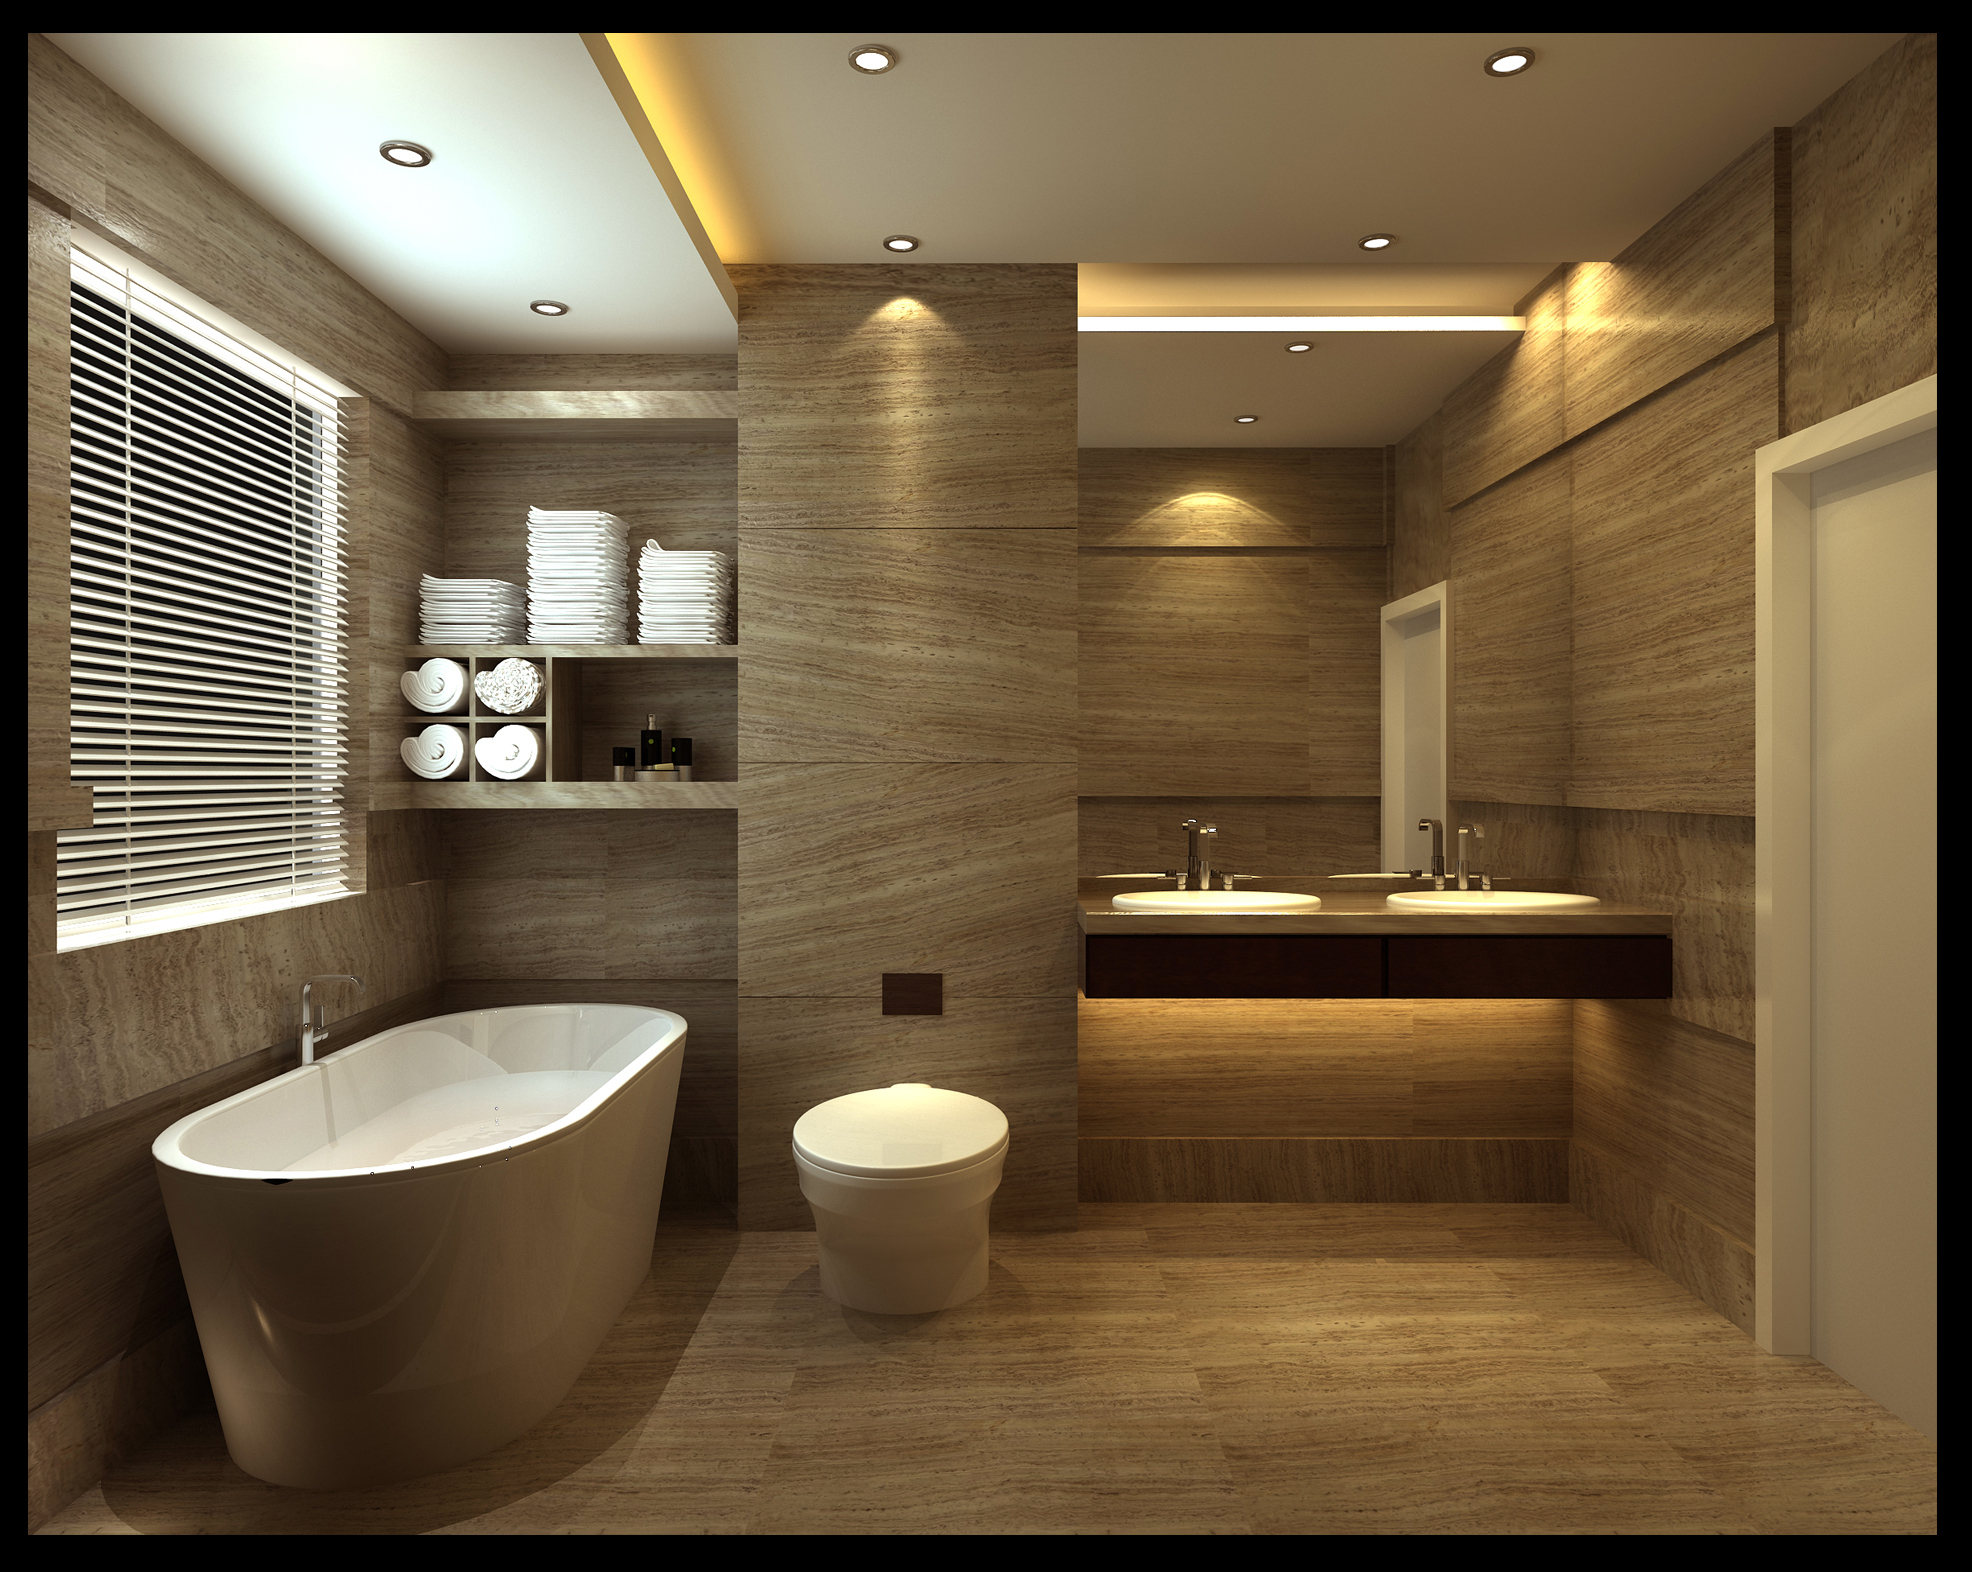 Дизайн для ванной и туалета » Картинки и фотографии дизайна квартир .